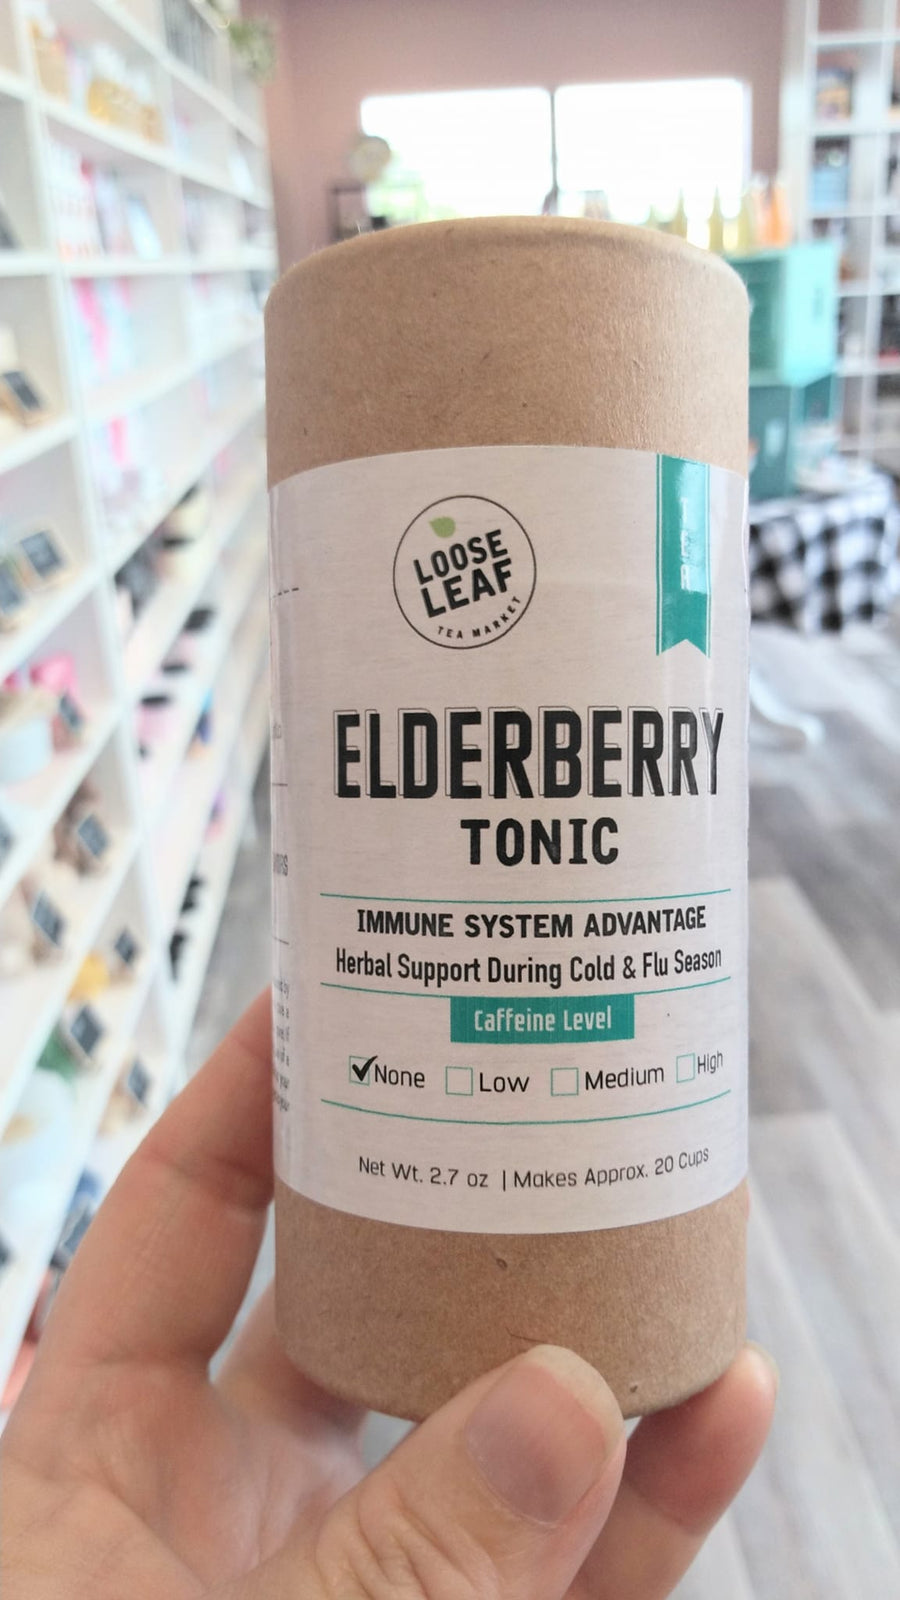 Loose Leaf Tea - Elderberry Tonic - Immune System